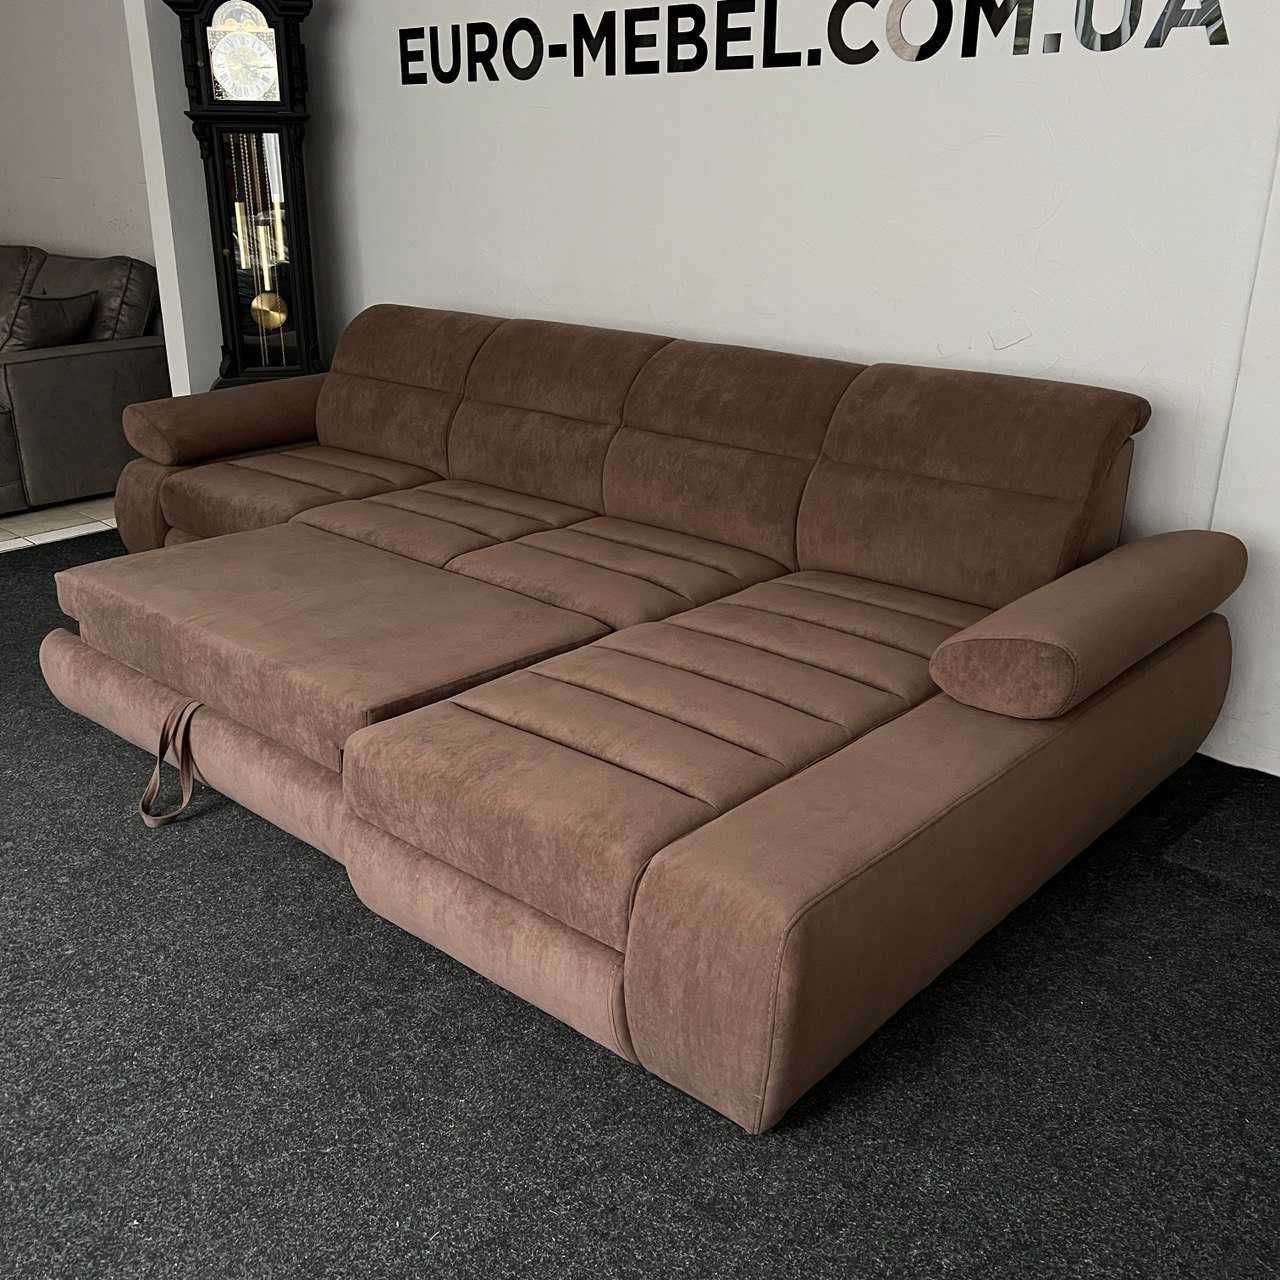 Новий диван в тканині коричневий «Бестселер»